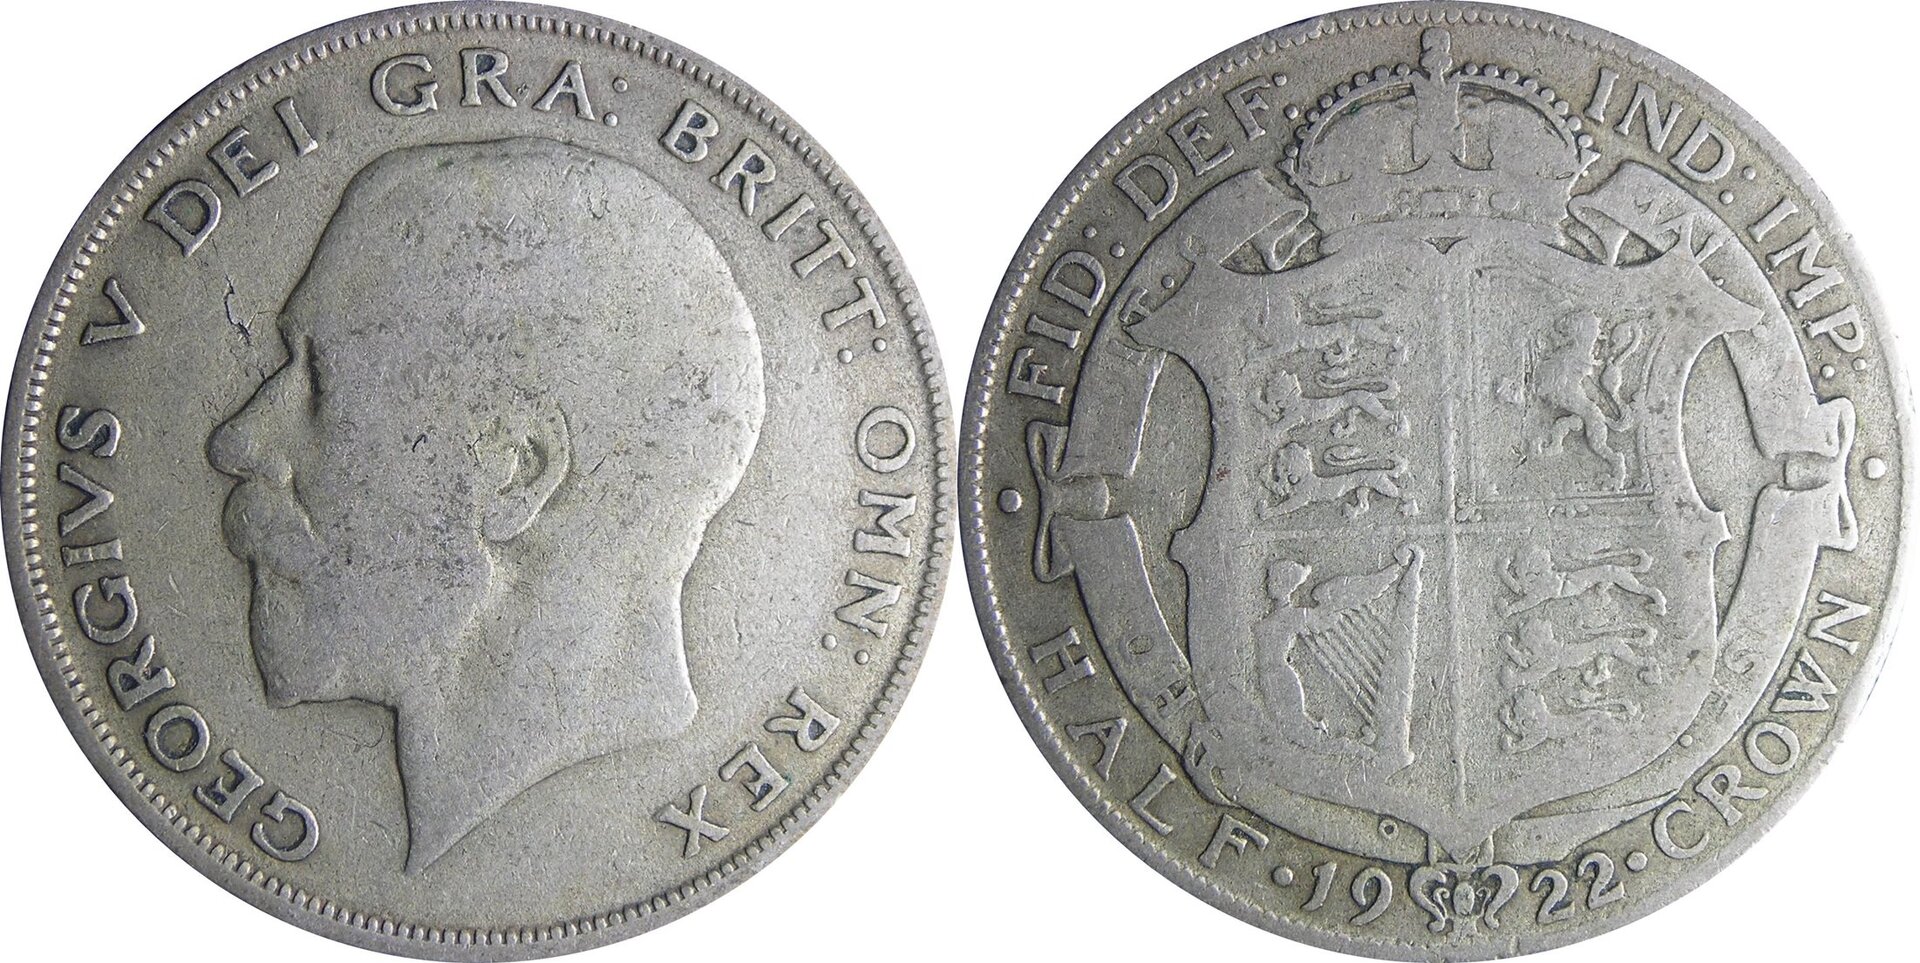 1922 GB 1-2 crown.jpg